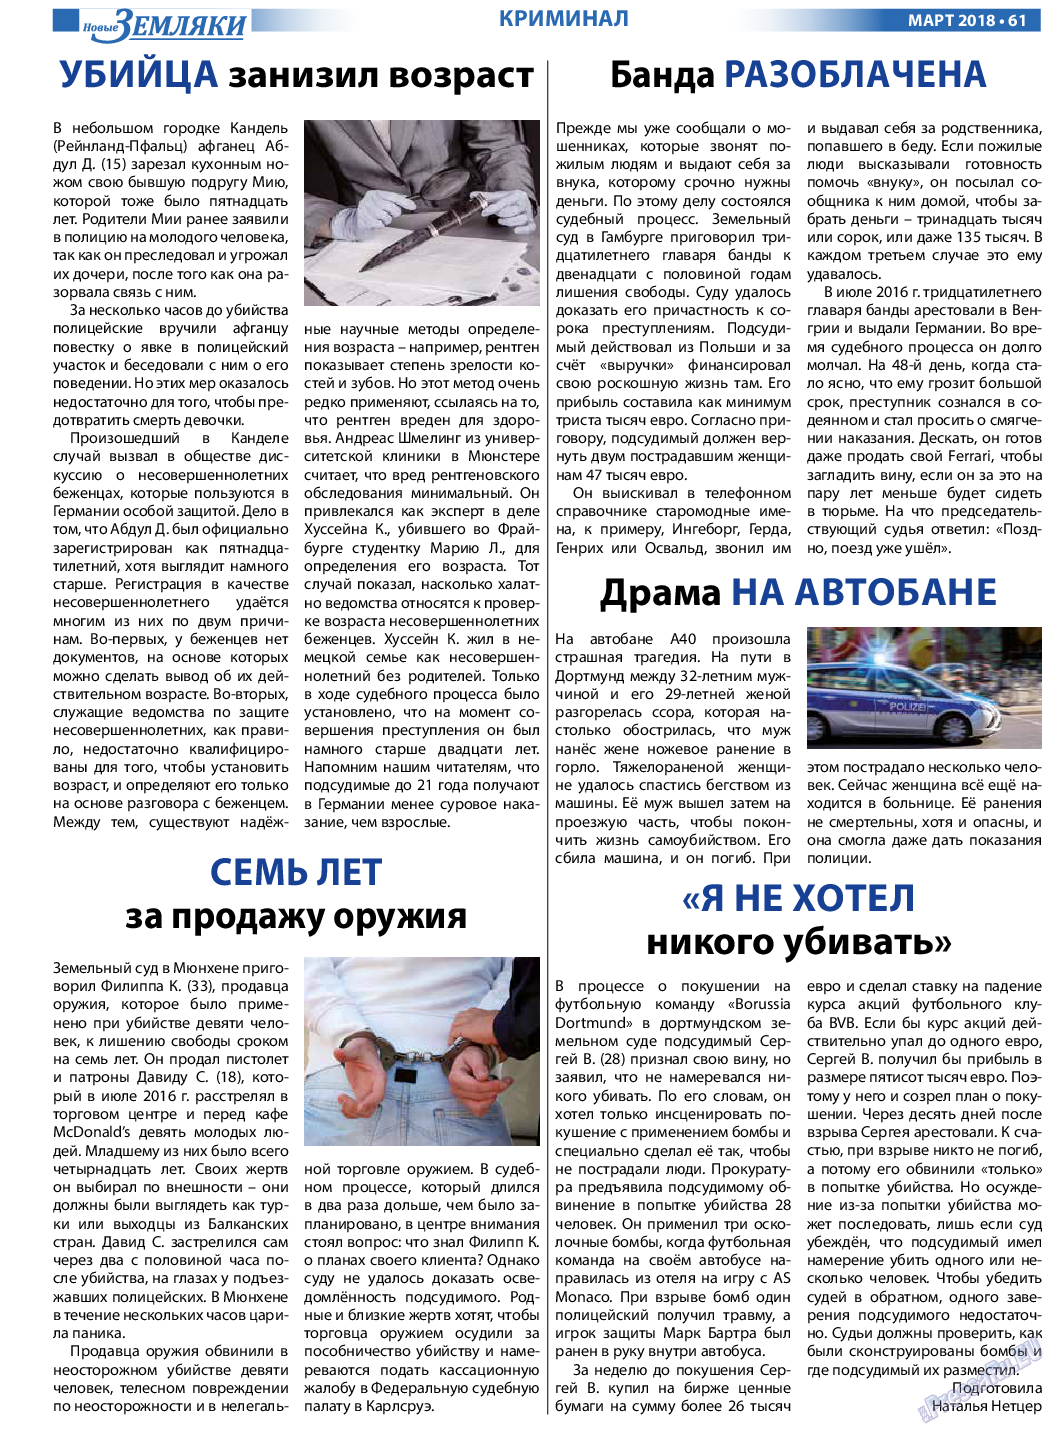 Новые Земляки, газета. 2018 №3 стр.61